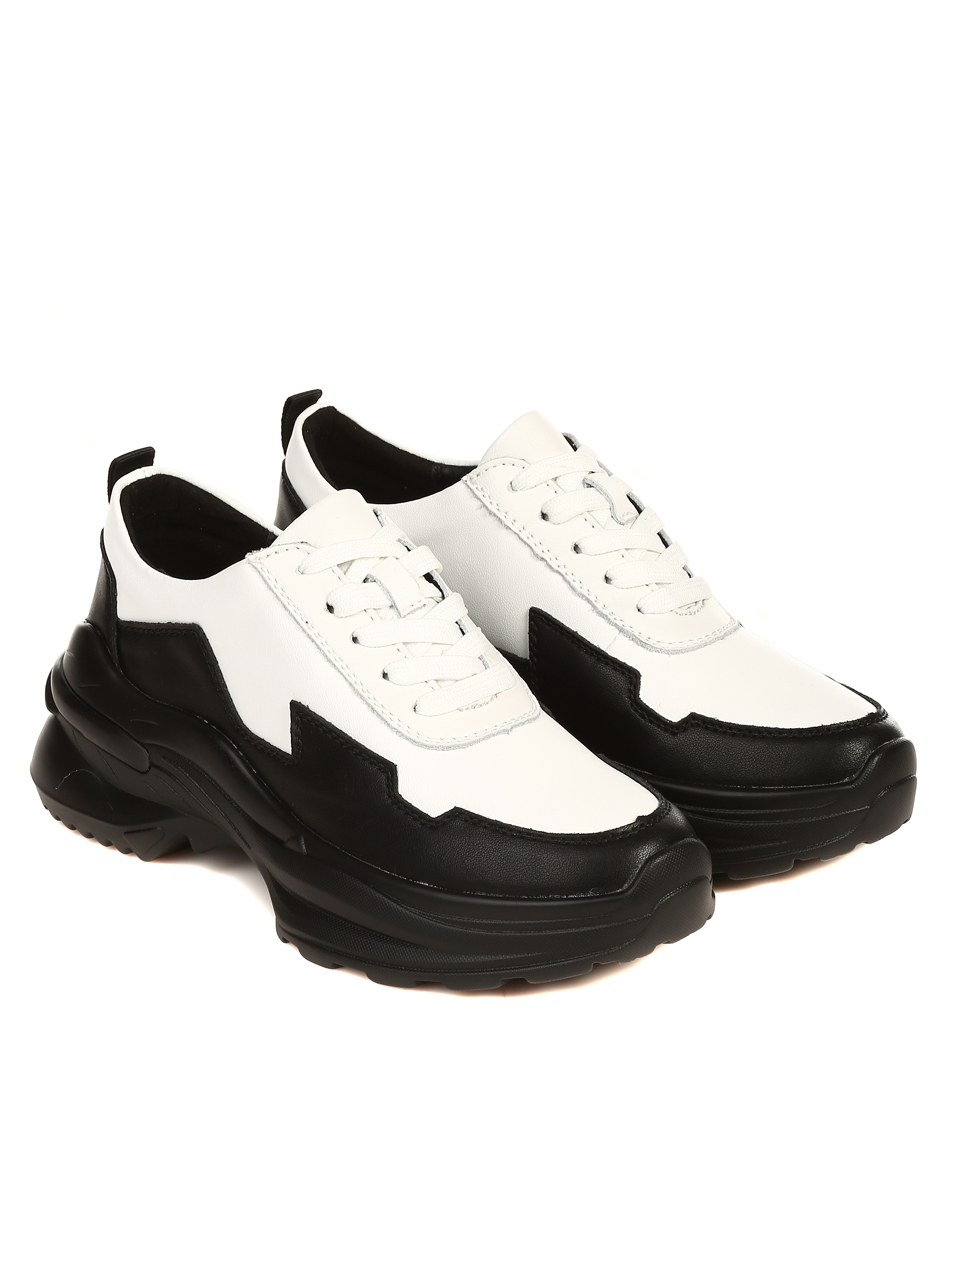 Ежедневни дамски комфортни обувки от естествена кожа 3AF-22656 black/white